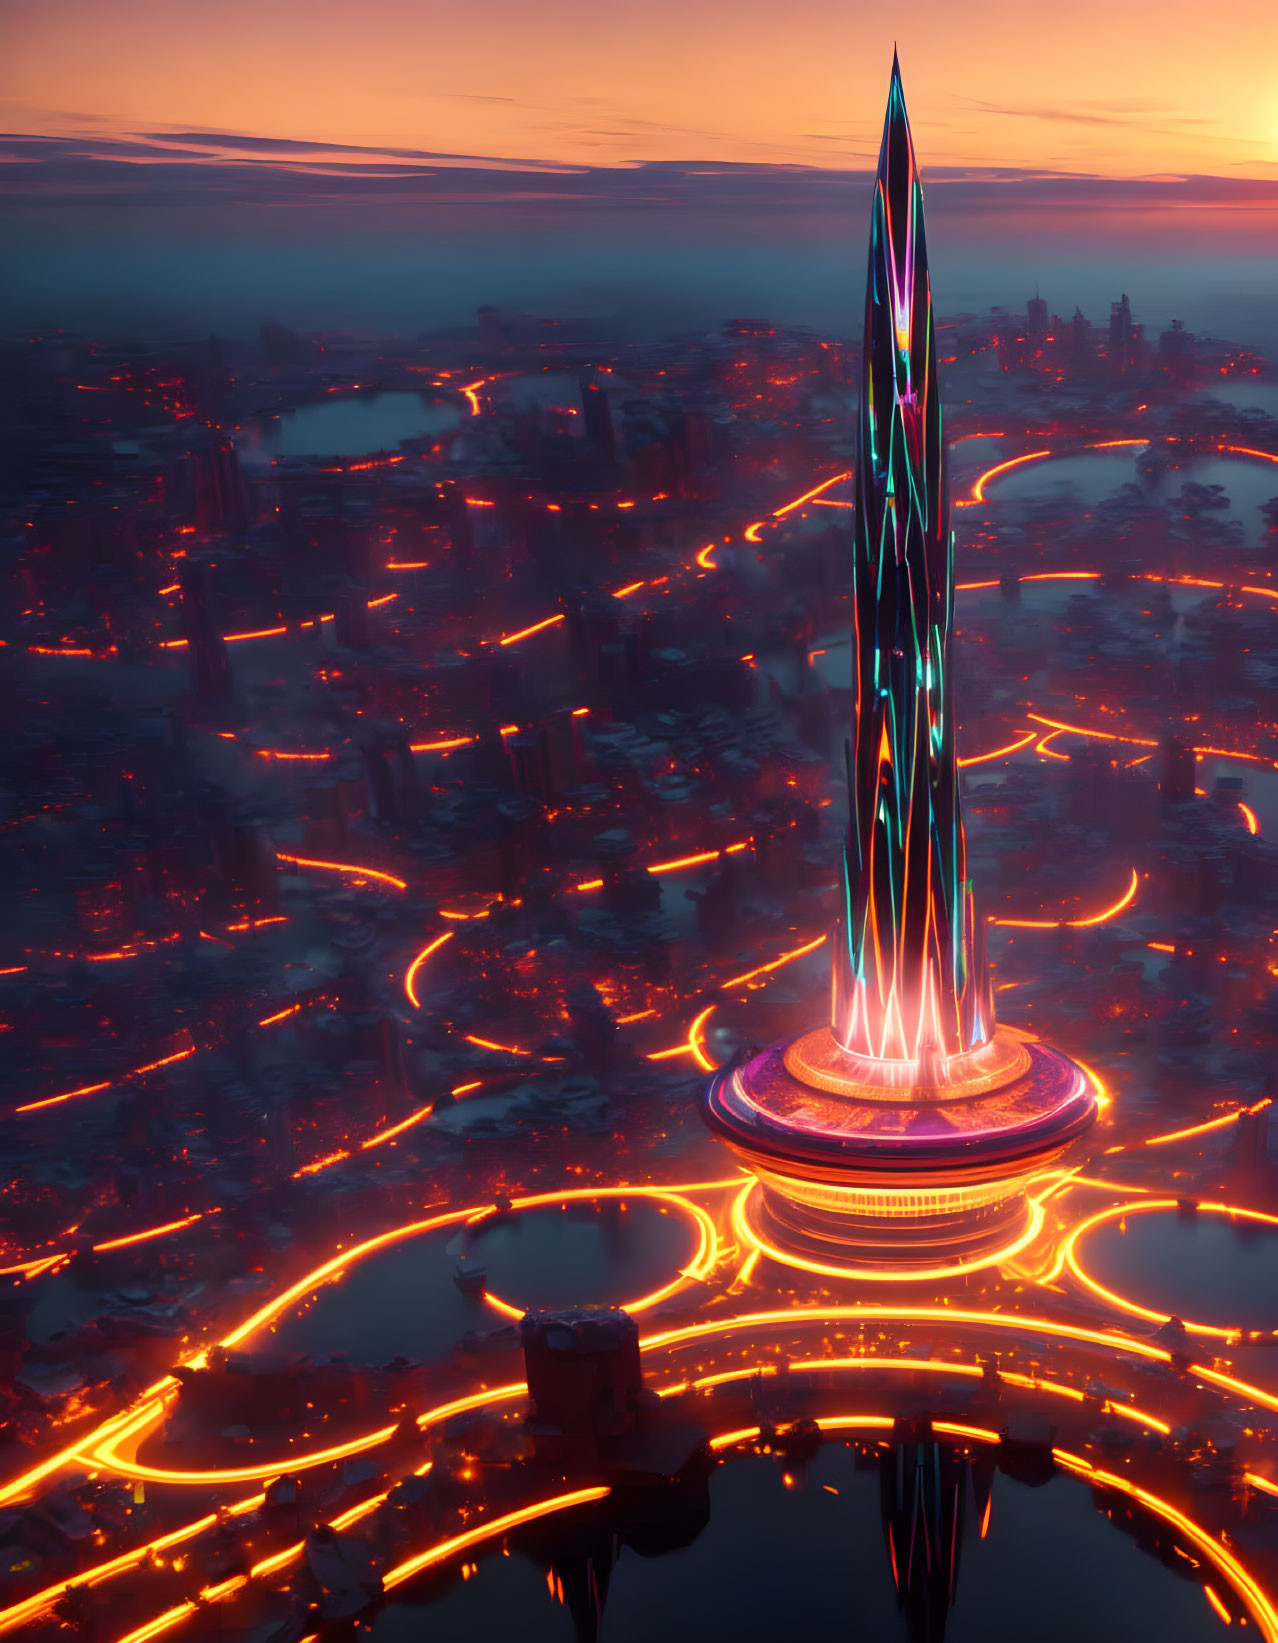 Futuristic skyscraper with neon accents in twilight cityscape